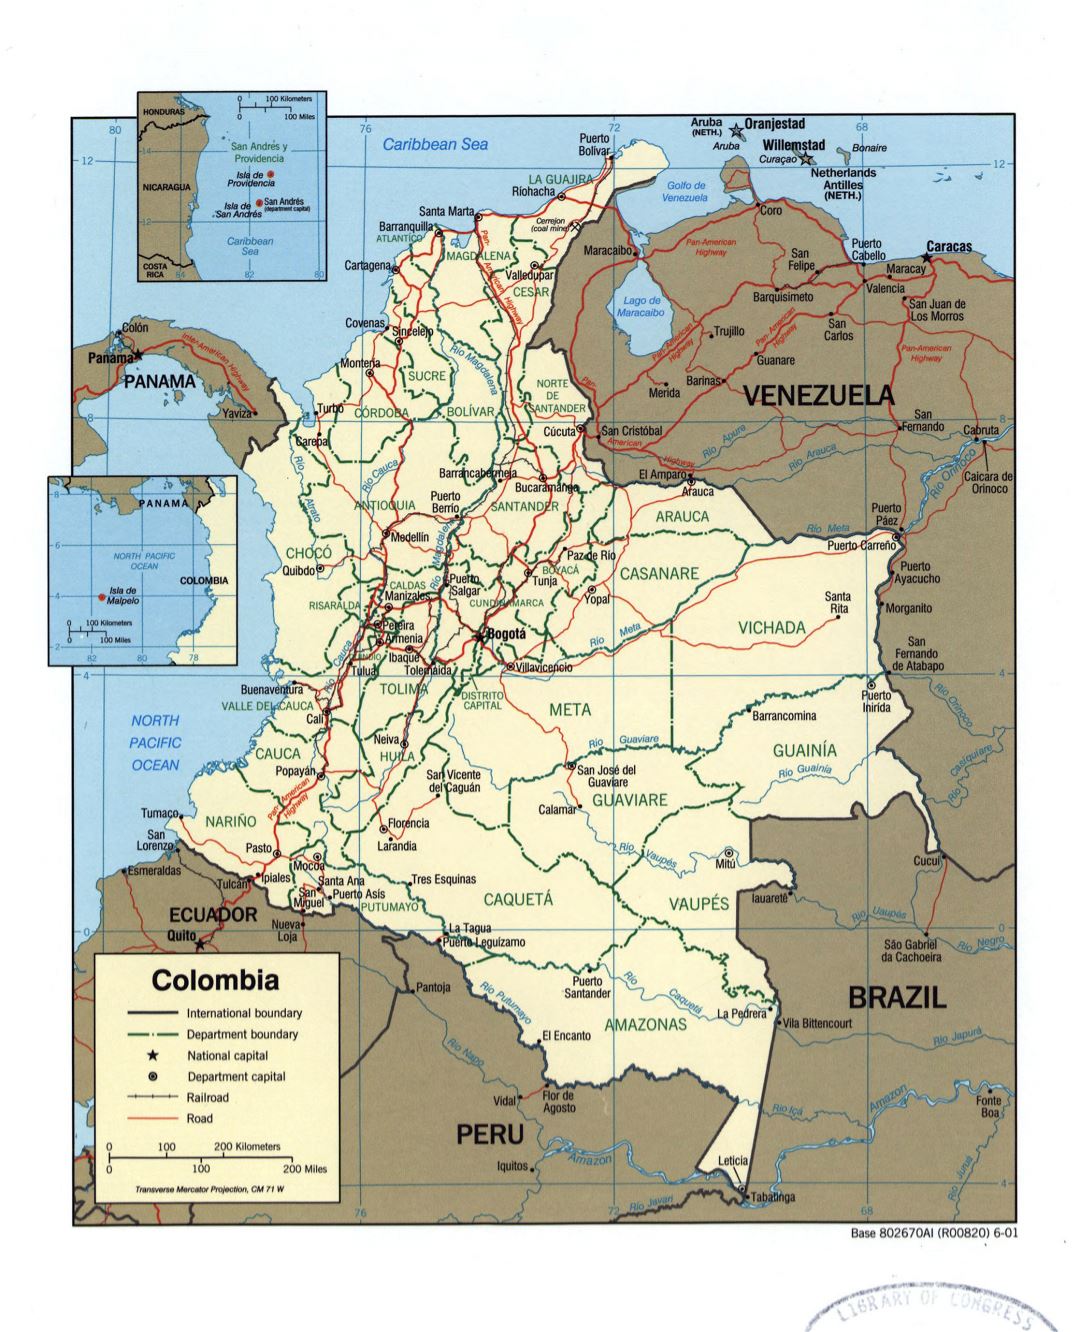 Большая детальная политическая и административная карта Колумбии с пометками городов, дорог и железных дорог - 2001